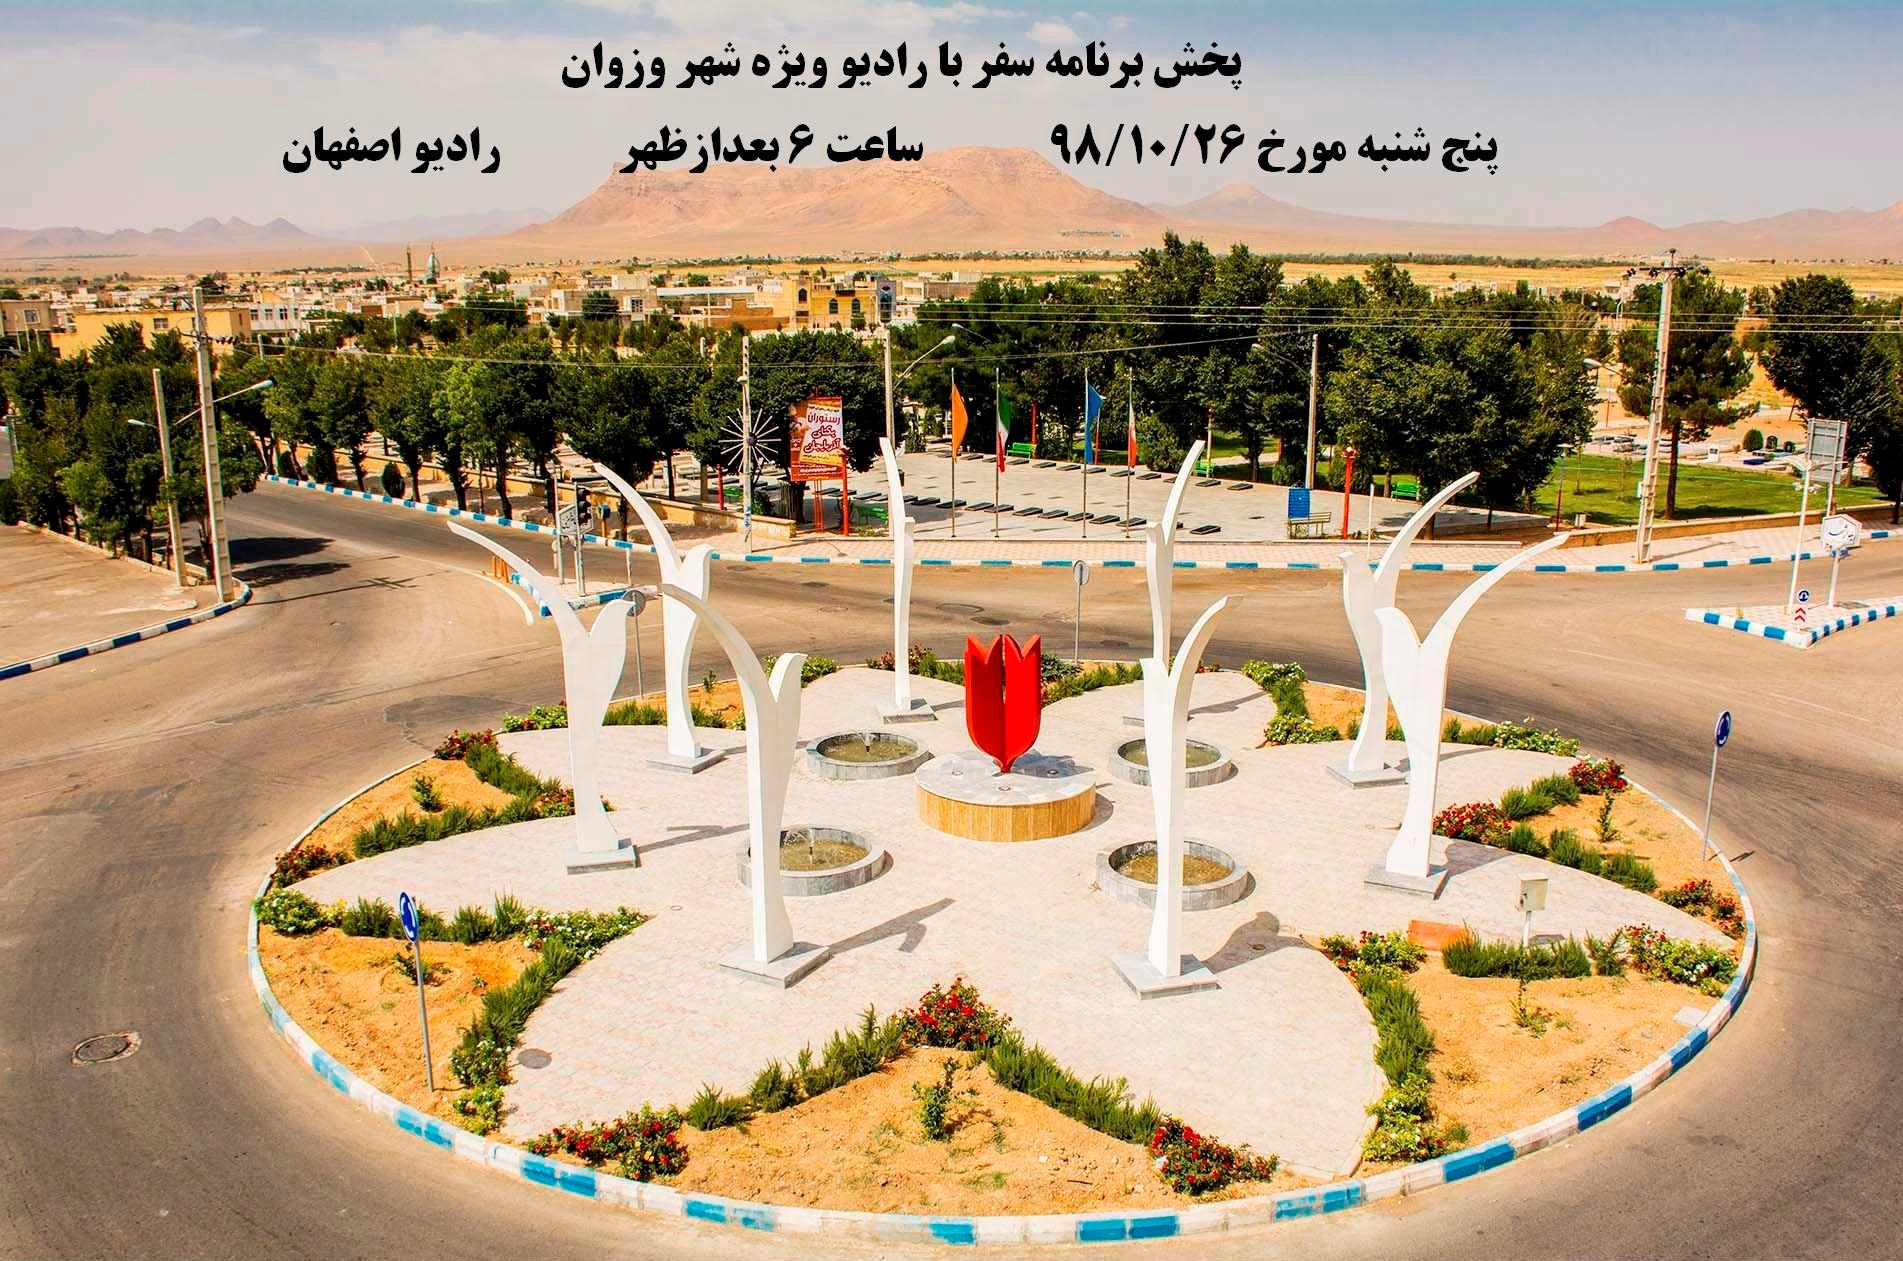 پخش برنامه سفر با رادیو ویژه شهر وزوان از رادیو اصفهان